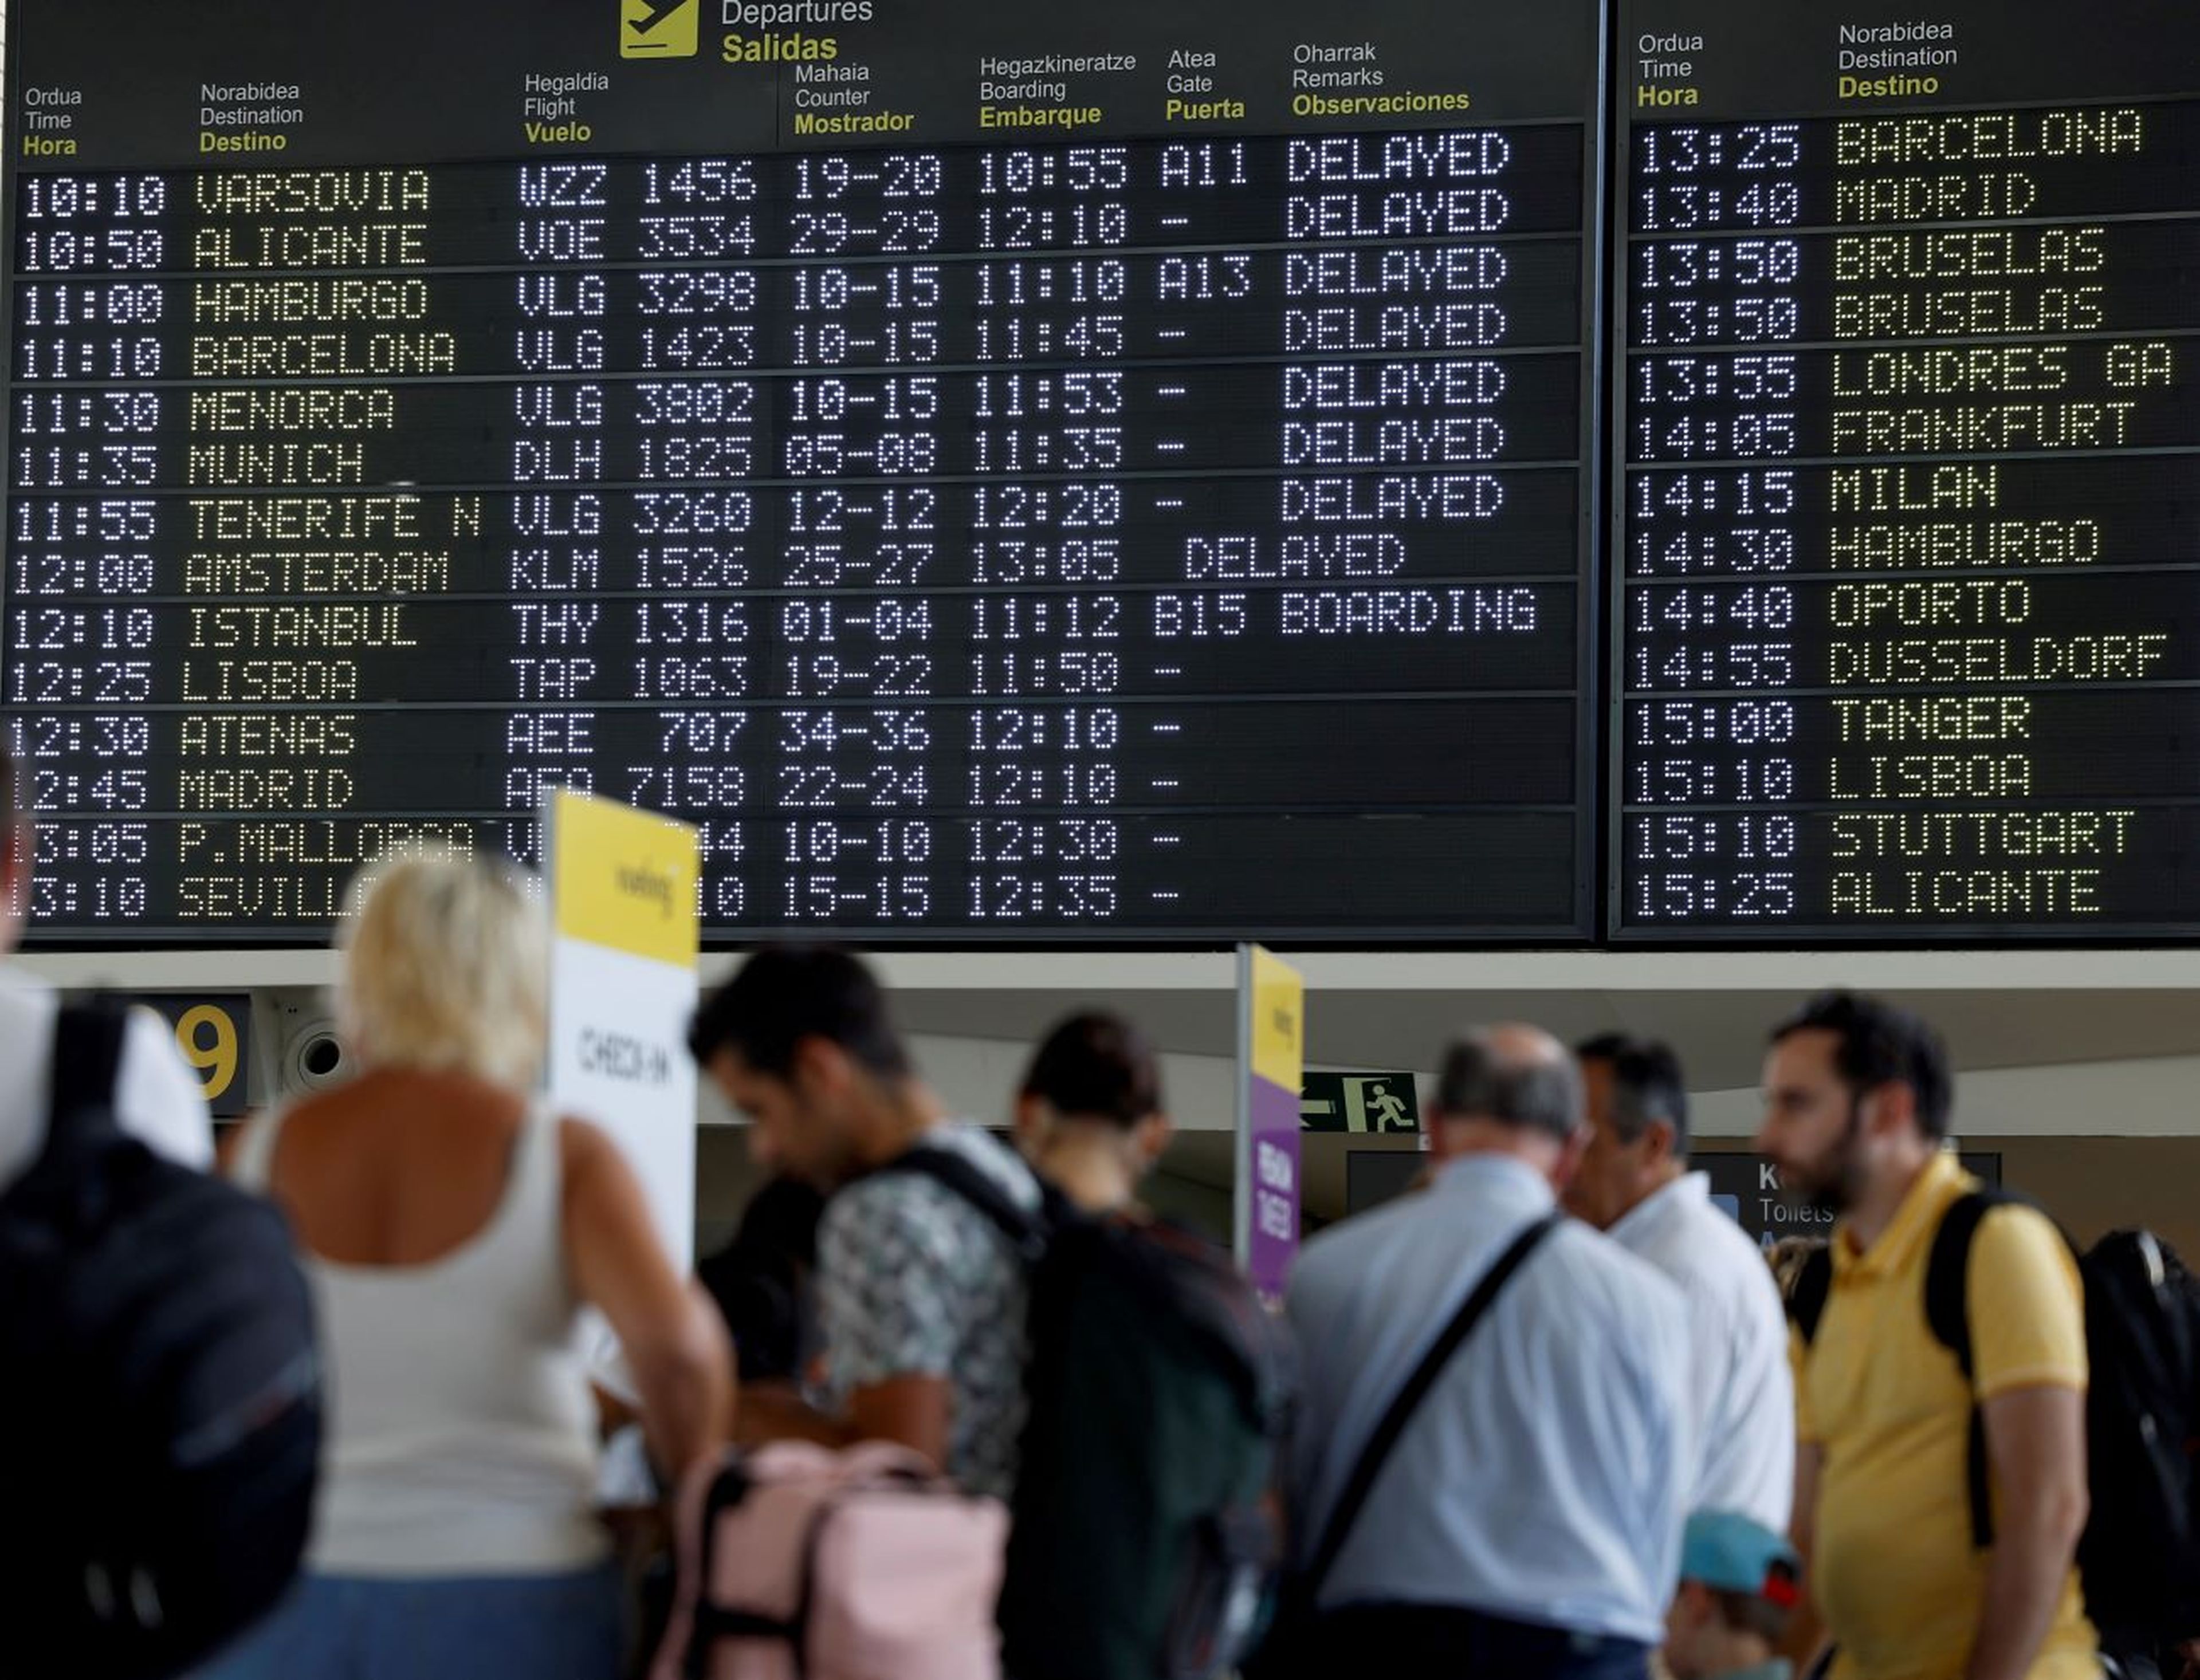 Aeropuerto de Bilbao, España, vuelos retrasados